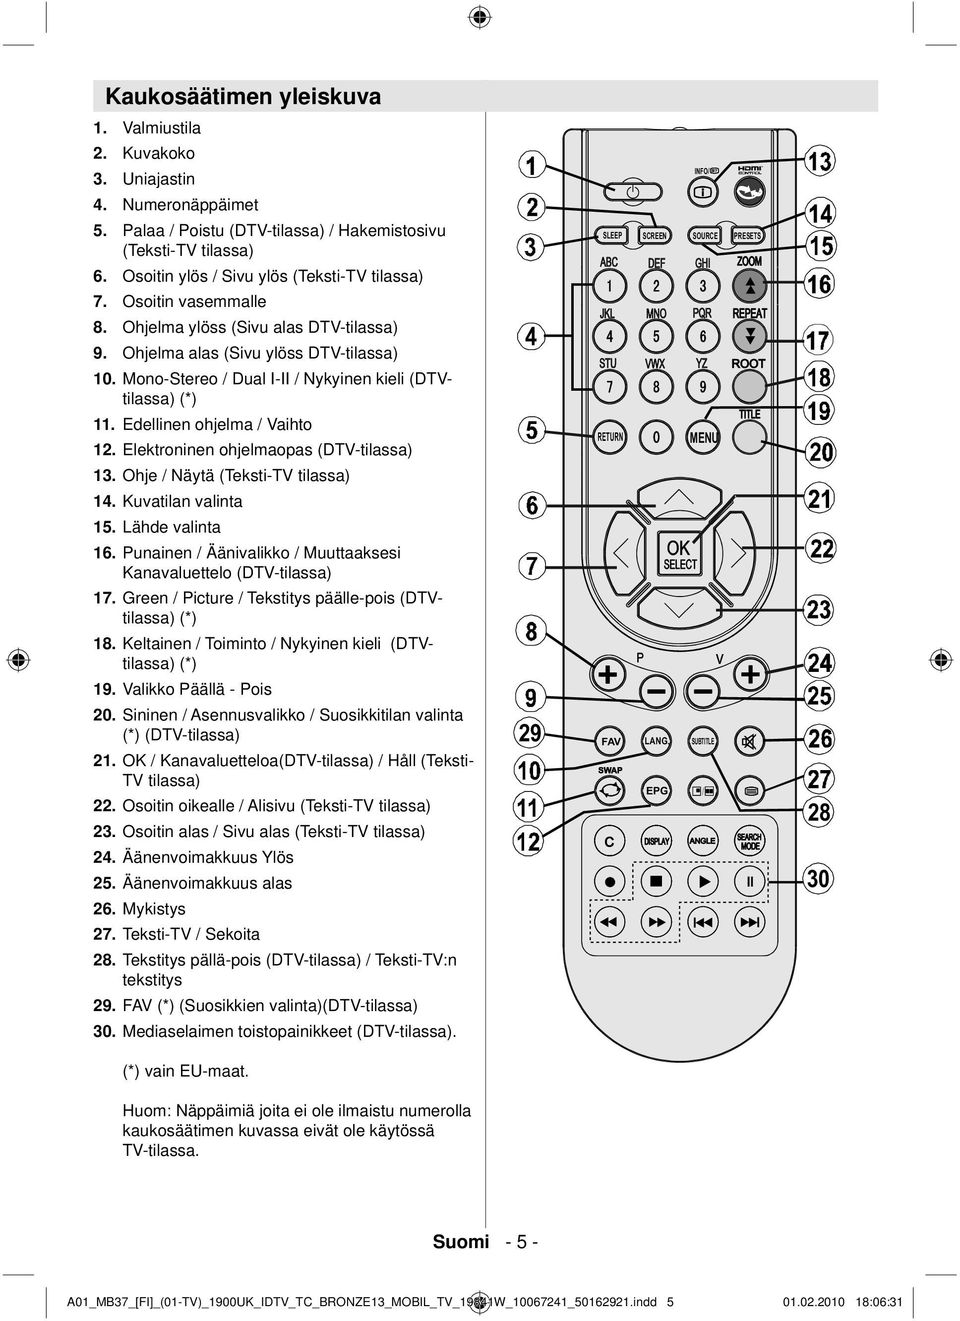 Mono-Stereo / Dual I-II / Nykyinen kieli (DTVtilassa) (*) 11. Edellinen ohjelma / Vaihto 12. Elektroninen ohjelmaopas (DTV-tilassa) 13. Ohje / Näytä (Teksti-TV tilassa) 14. Kuvatilan valinta 15.